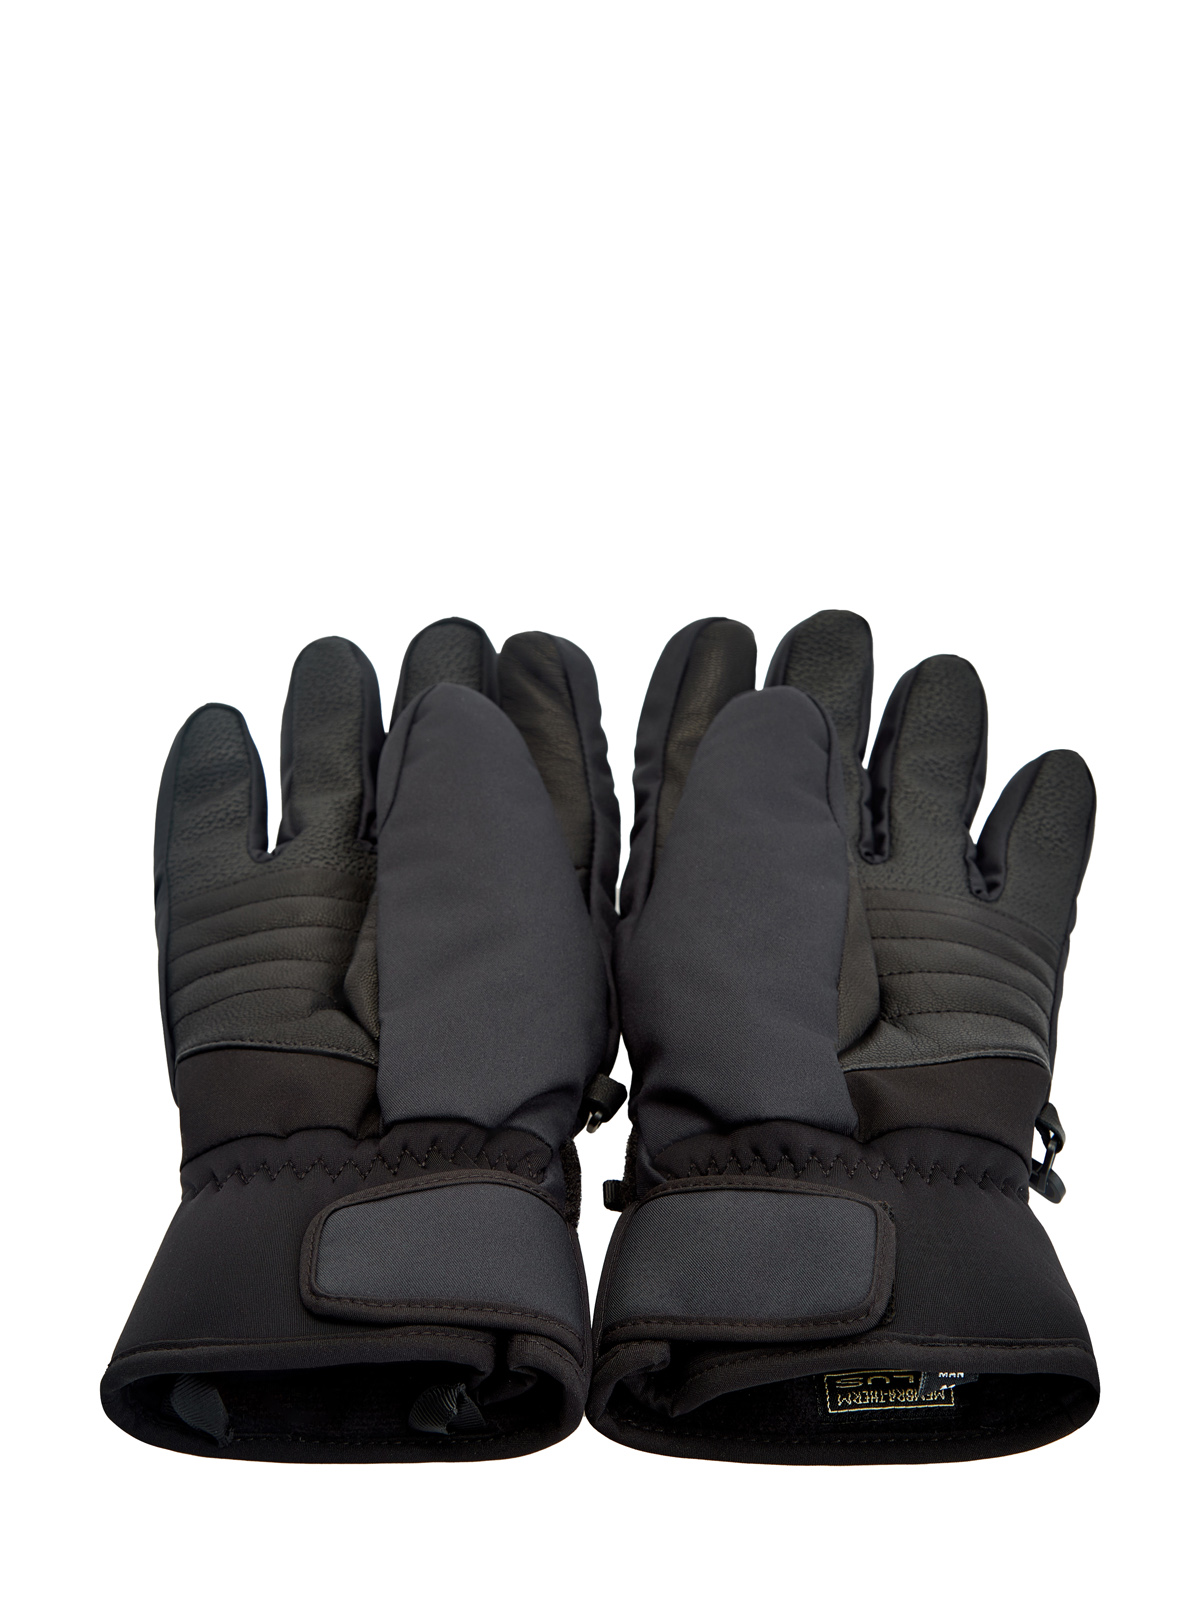 Утепленные перчатки с термозащитой thermo-plus и кожаными вставками COLMAR, цвет черный, размер XL;M;L - фото 3